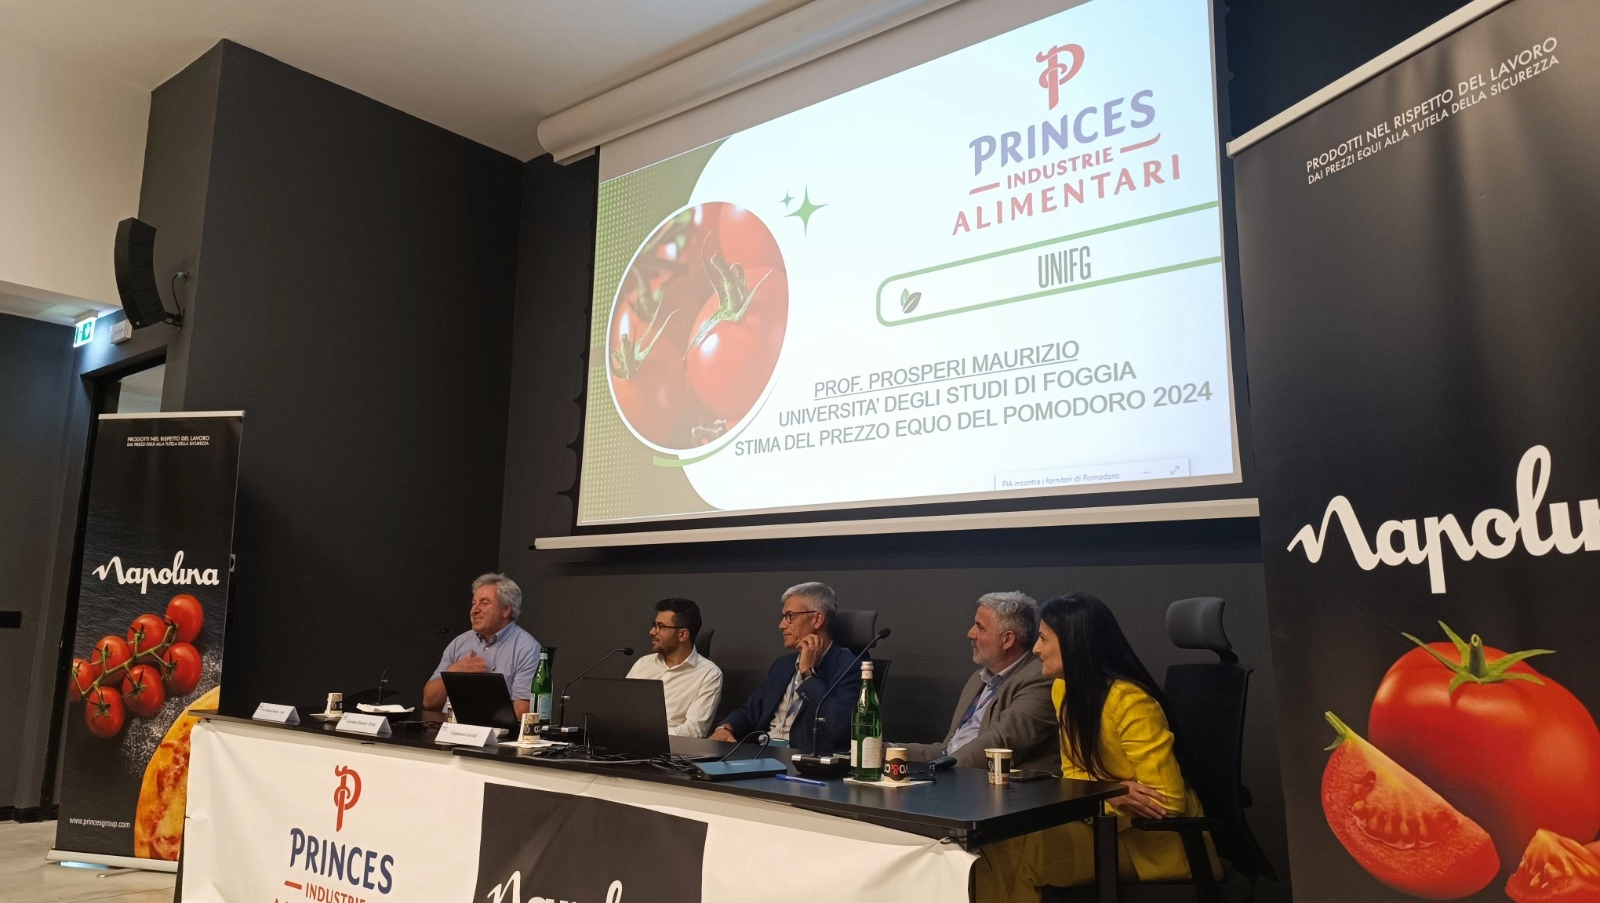 Princes Industrie Alimentari: AI e sostenibilità al centro della stagione 2024 del pomodoro pugliese